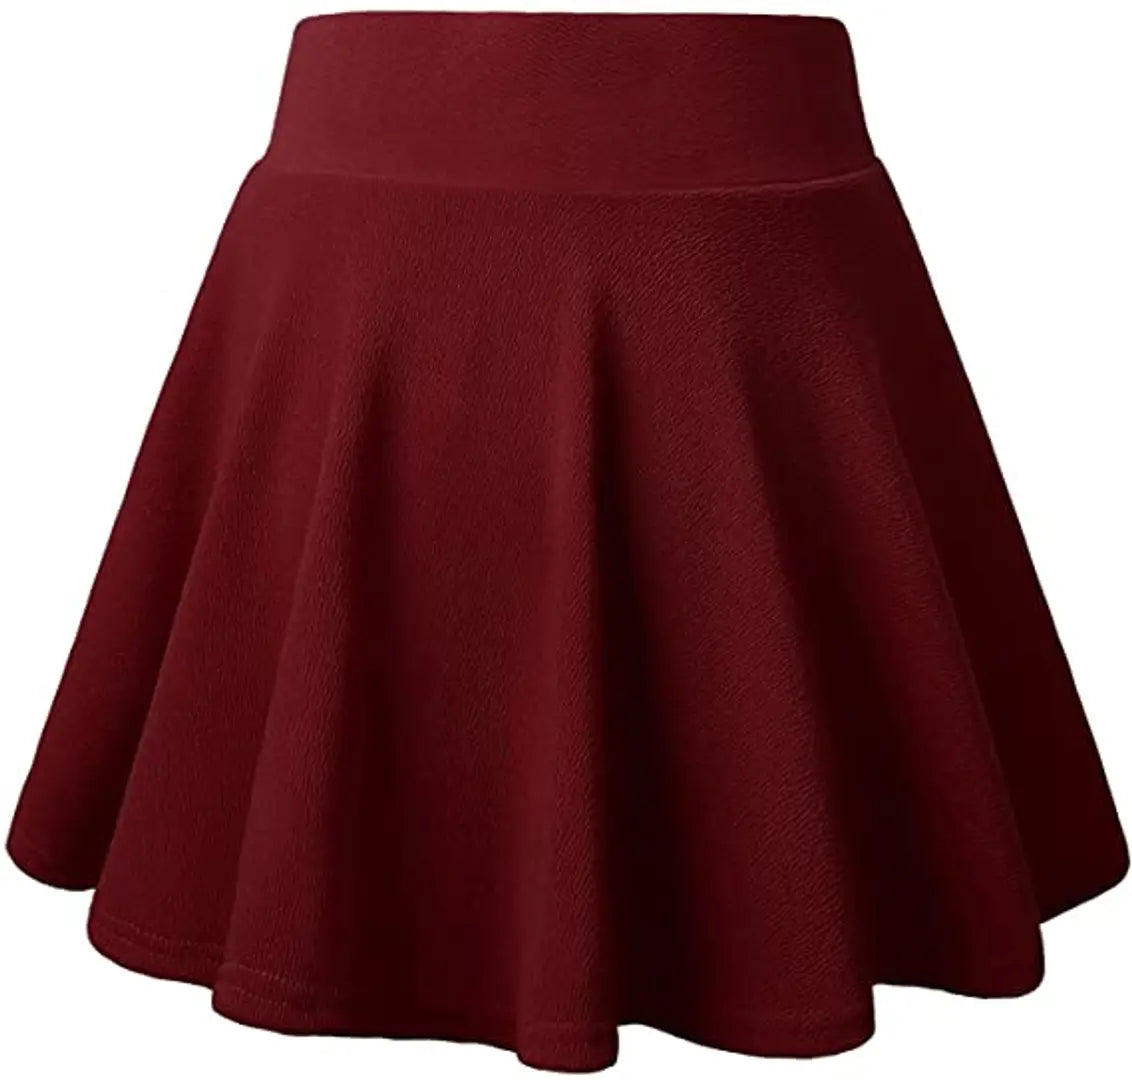 inner maroon skirt